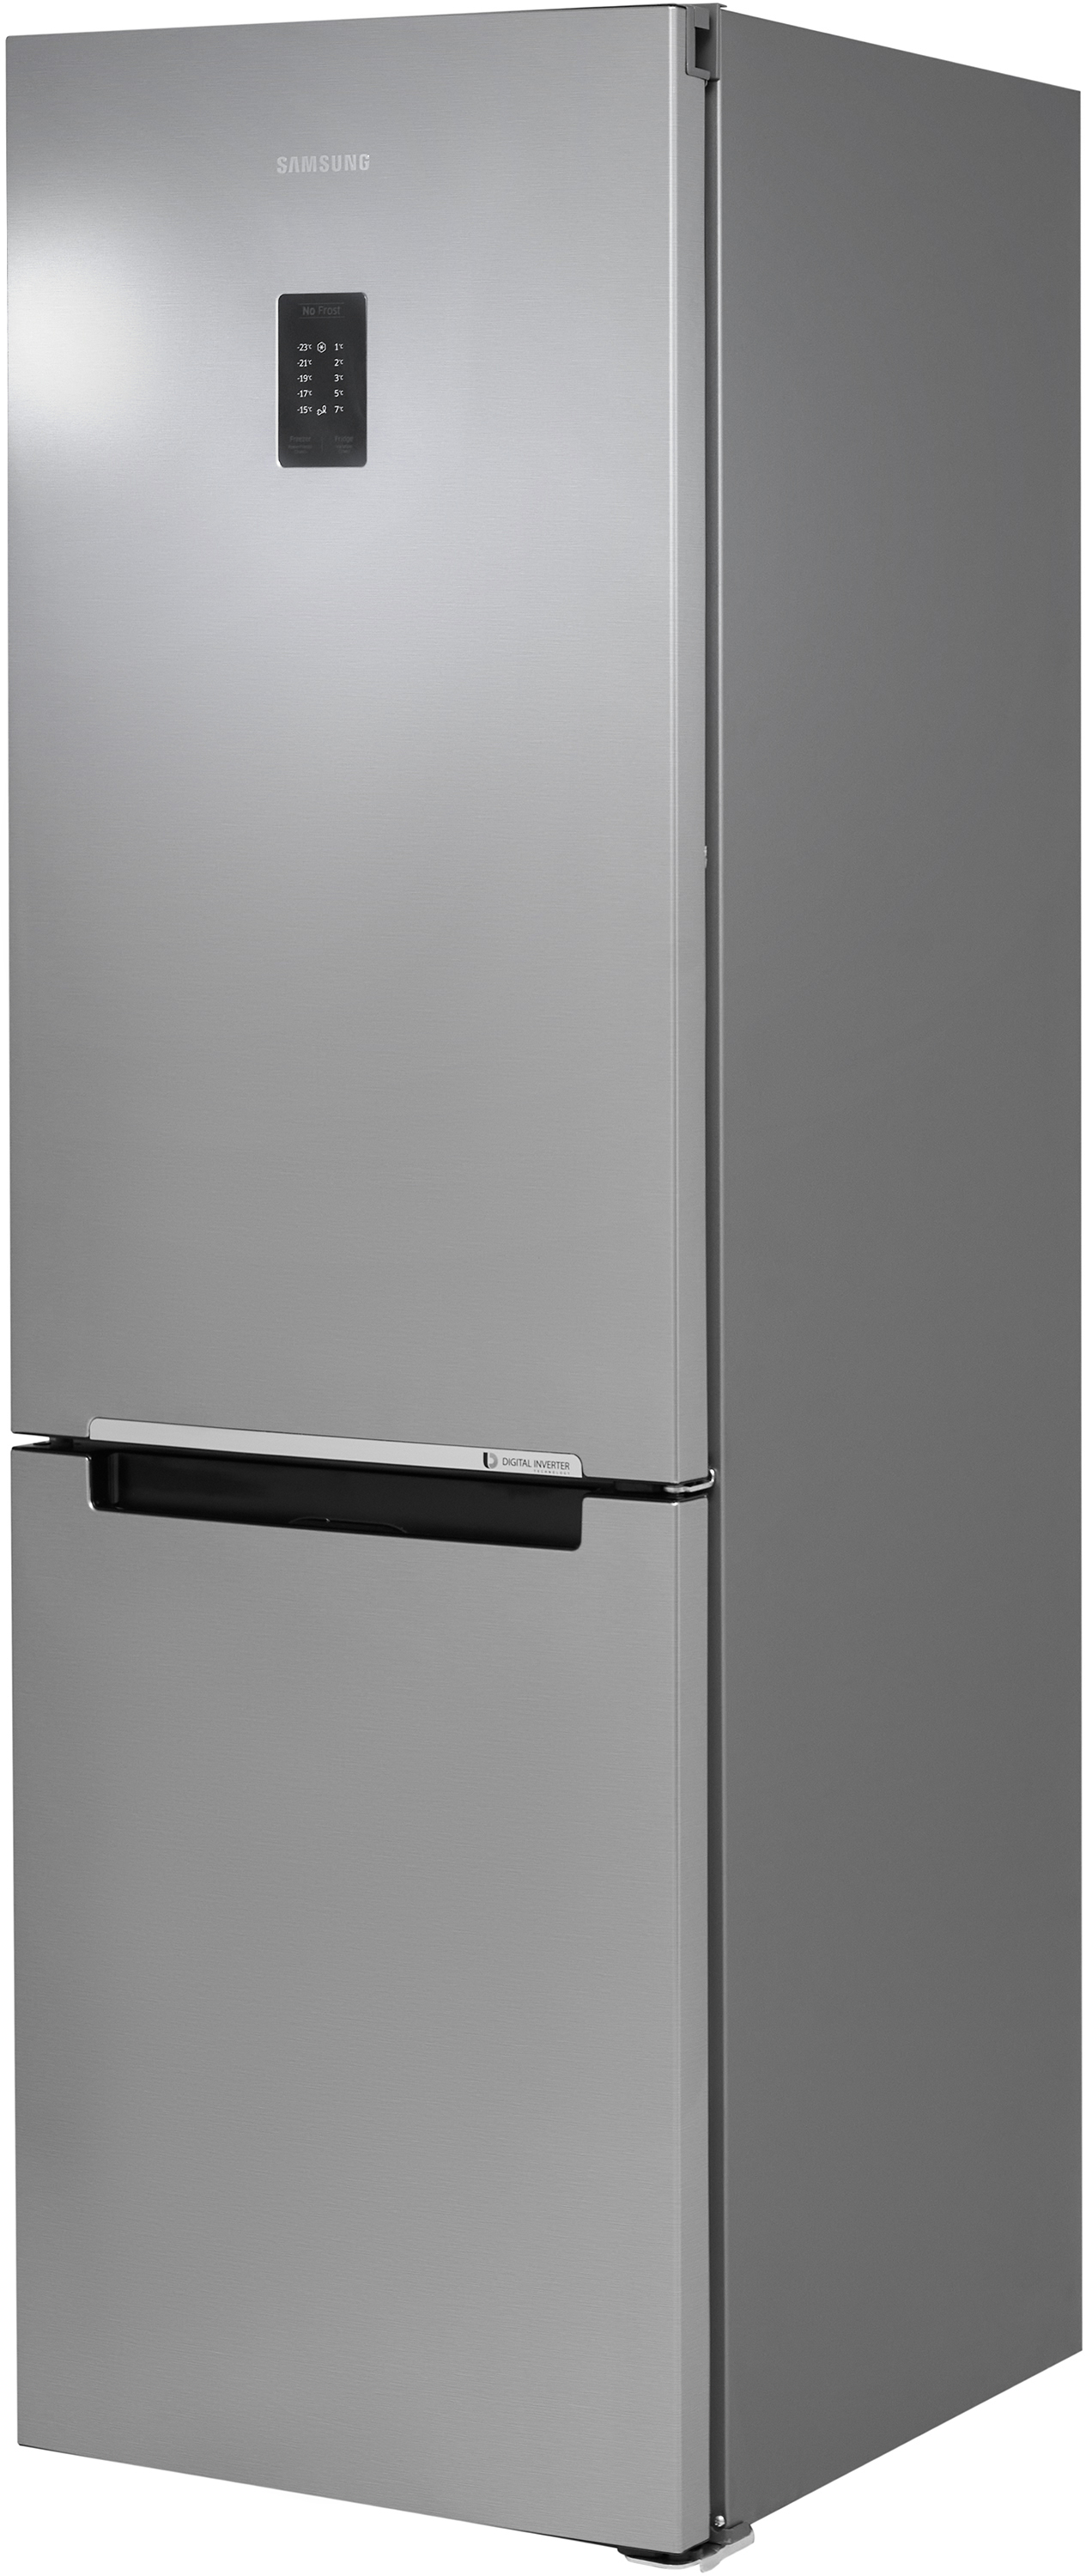 Какой холодильник выбрать: на фреоне или изобутане? - Ремонт холодильников